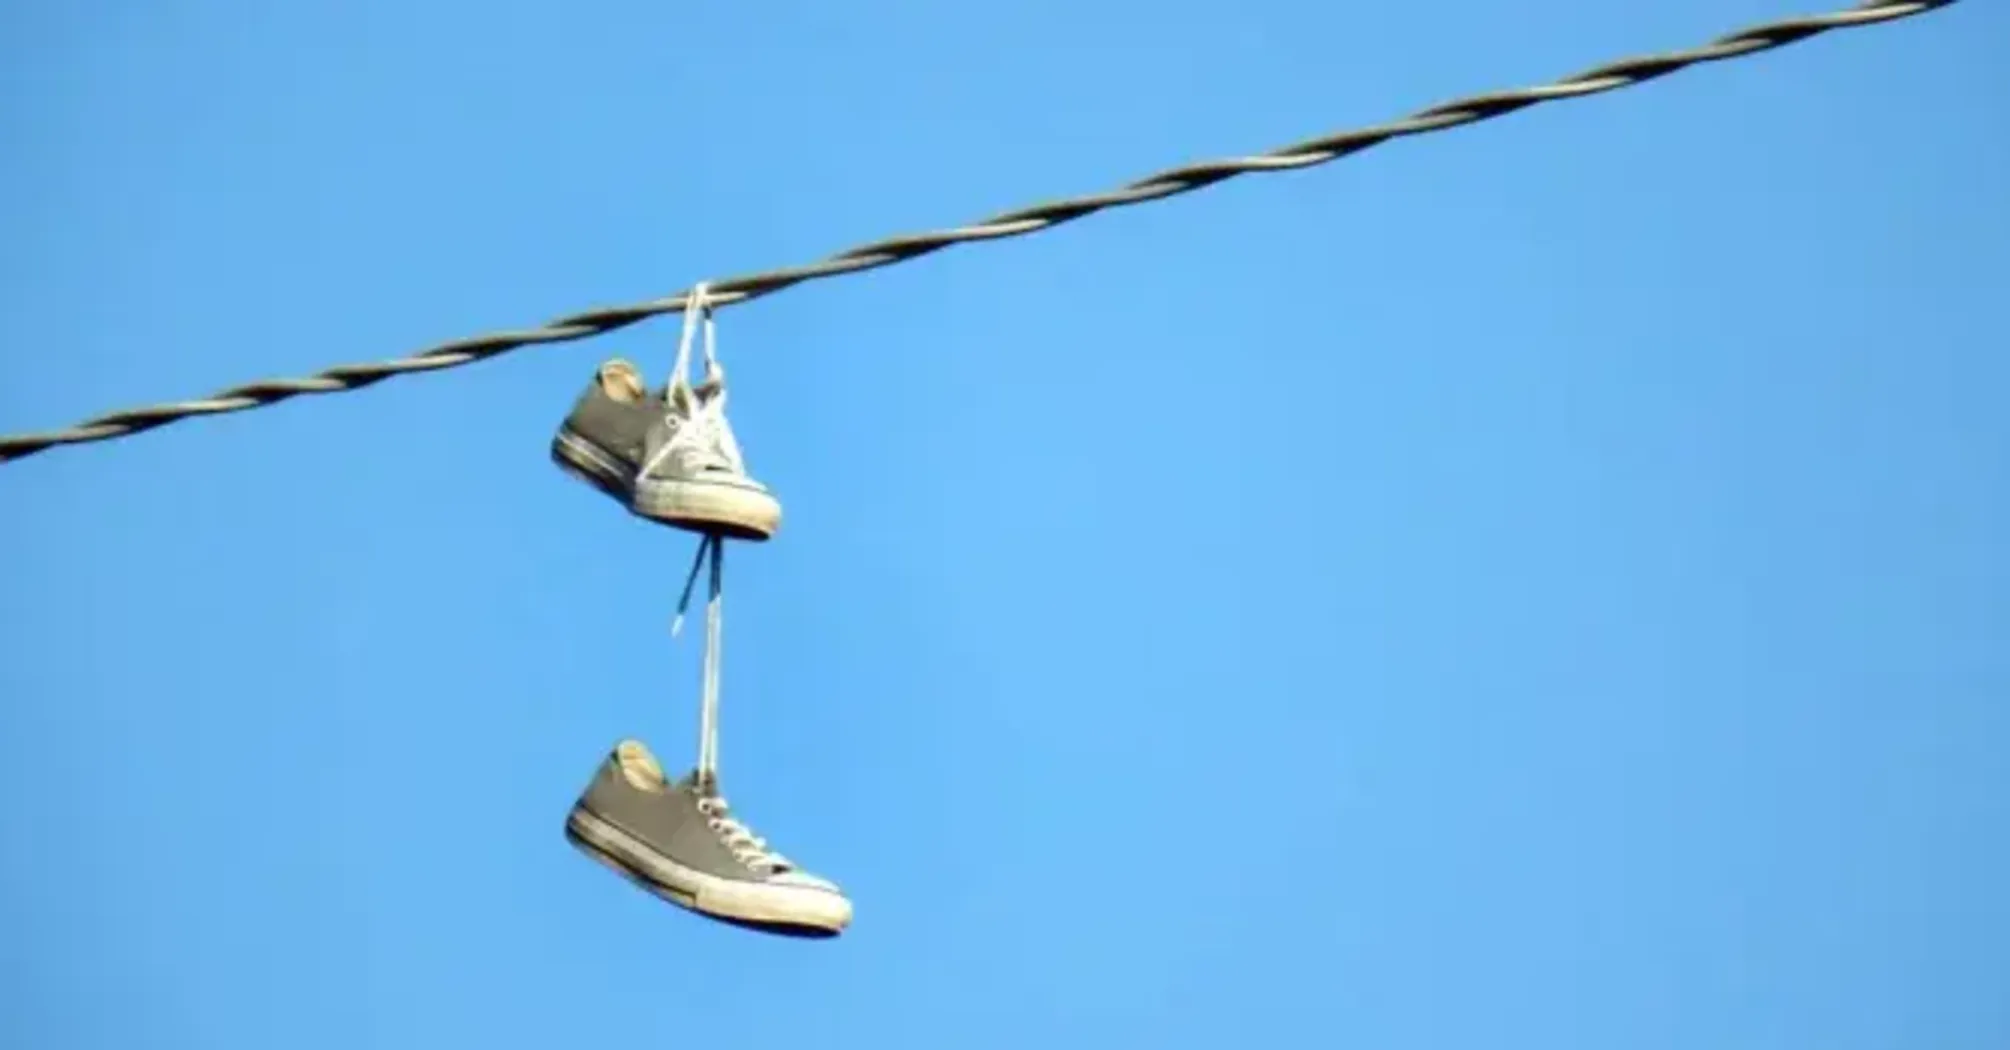 Таємниця кросівок на дротах: хто і навіщо розвішує взуття по всьому світу, та які це має приховані значення